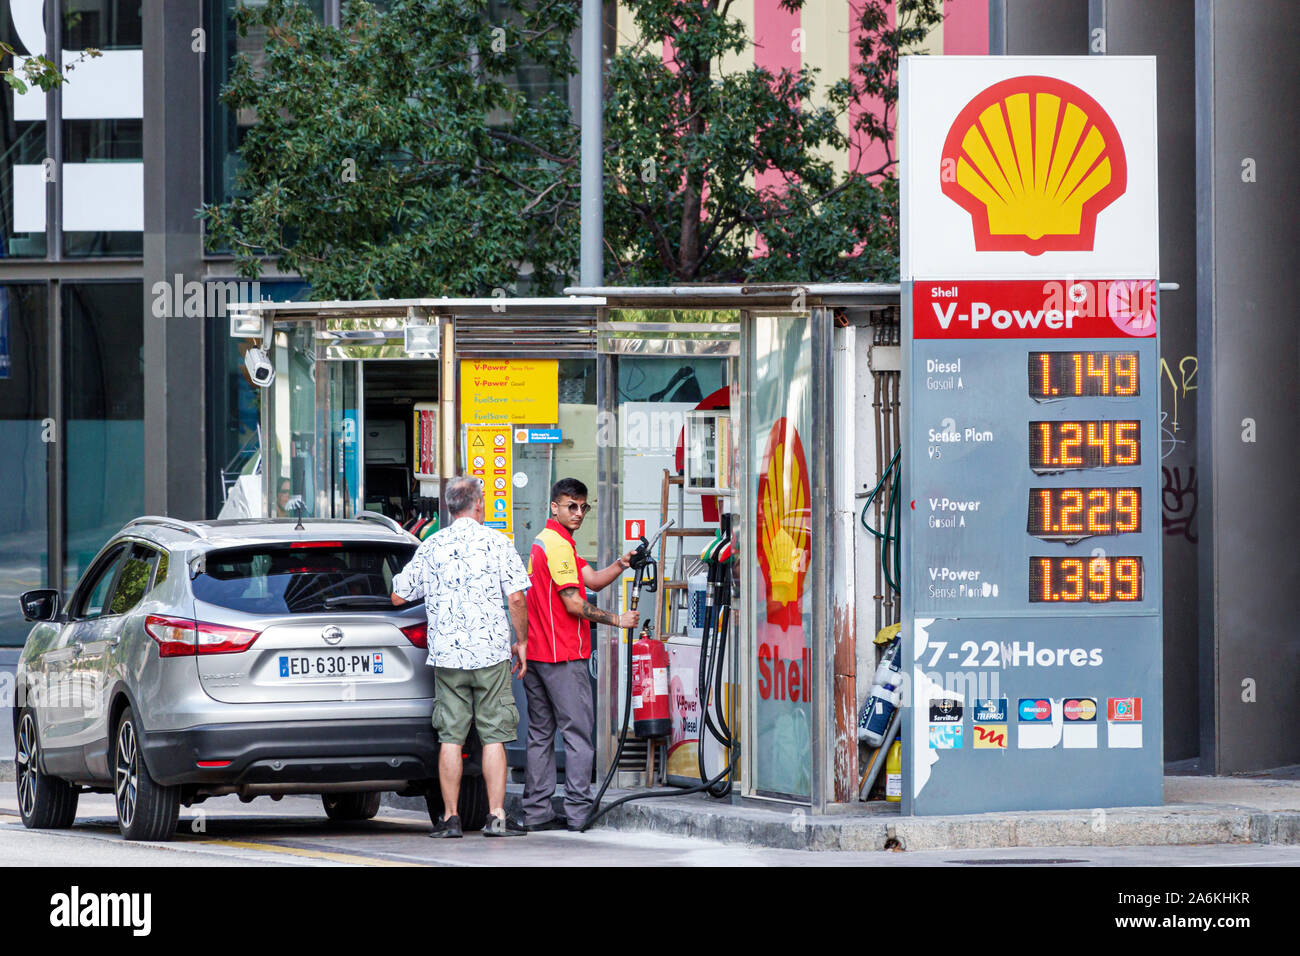 Barcellona Spagna,Catalonia El Poblenou,Avinguda Diagonal Avenue,Shell,distributore di benzina,auto,uomo,rifornimento,pompa,prezzo litro,Diesel,ispanico,ES190820094 Foto Stock